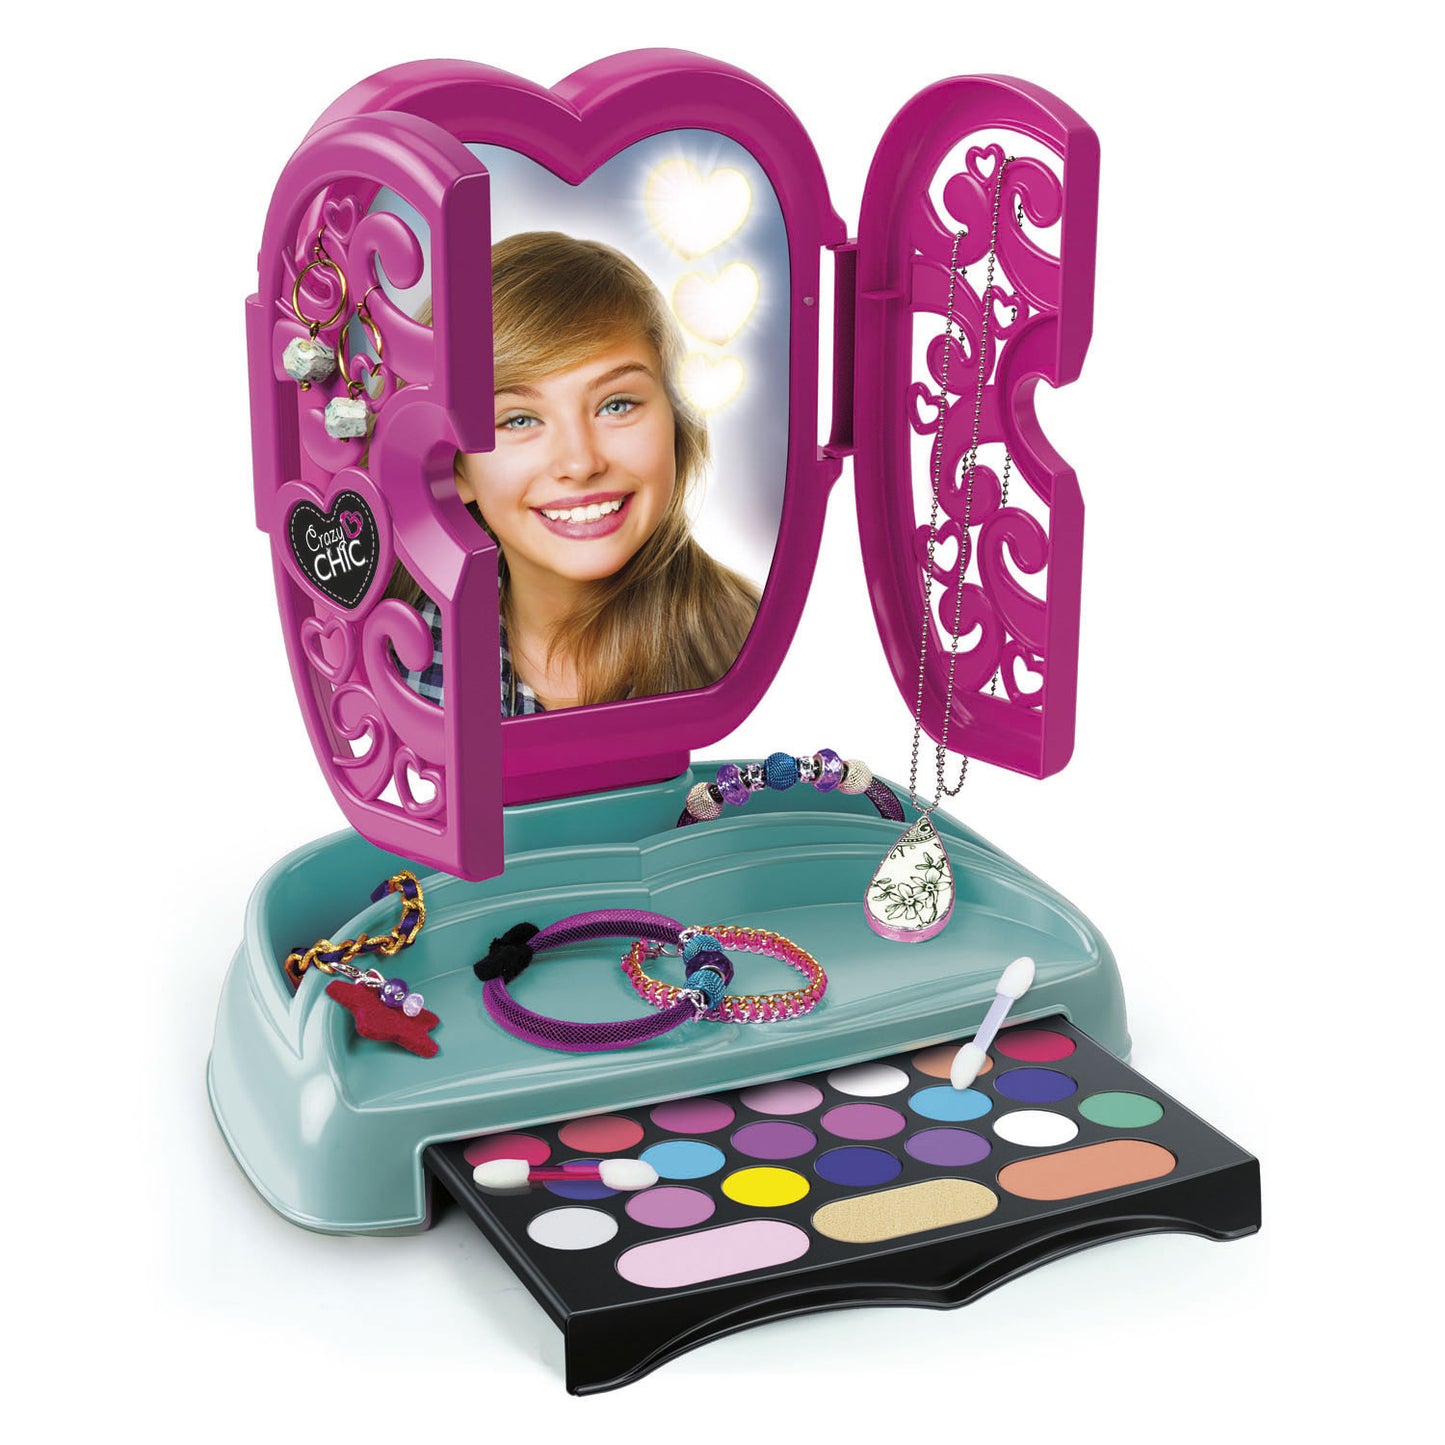 Clementoni Crazy Chic Make-up Spiegel